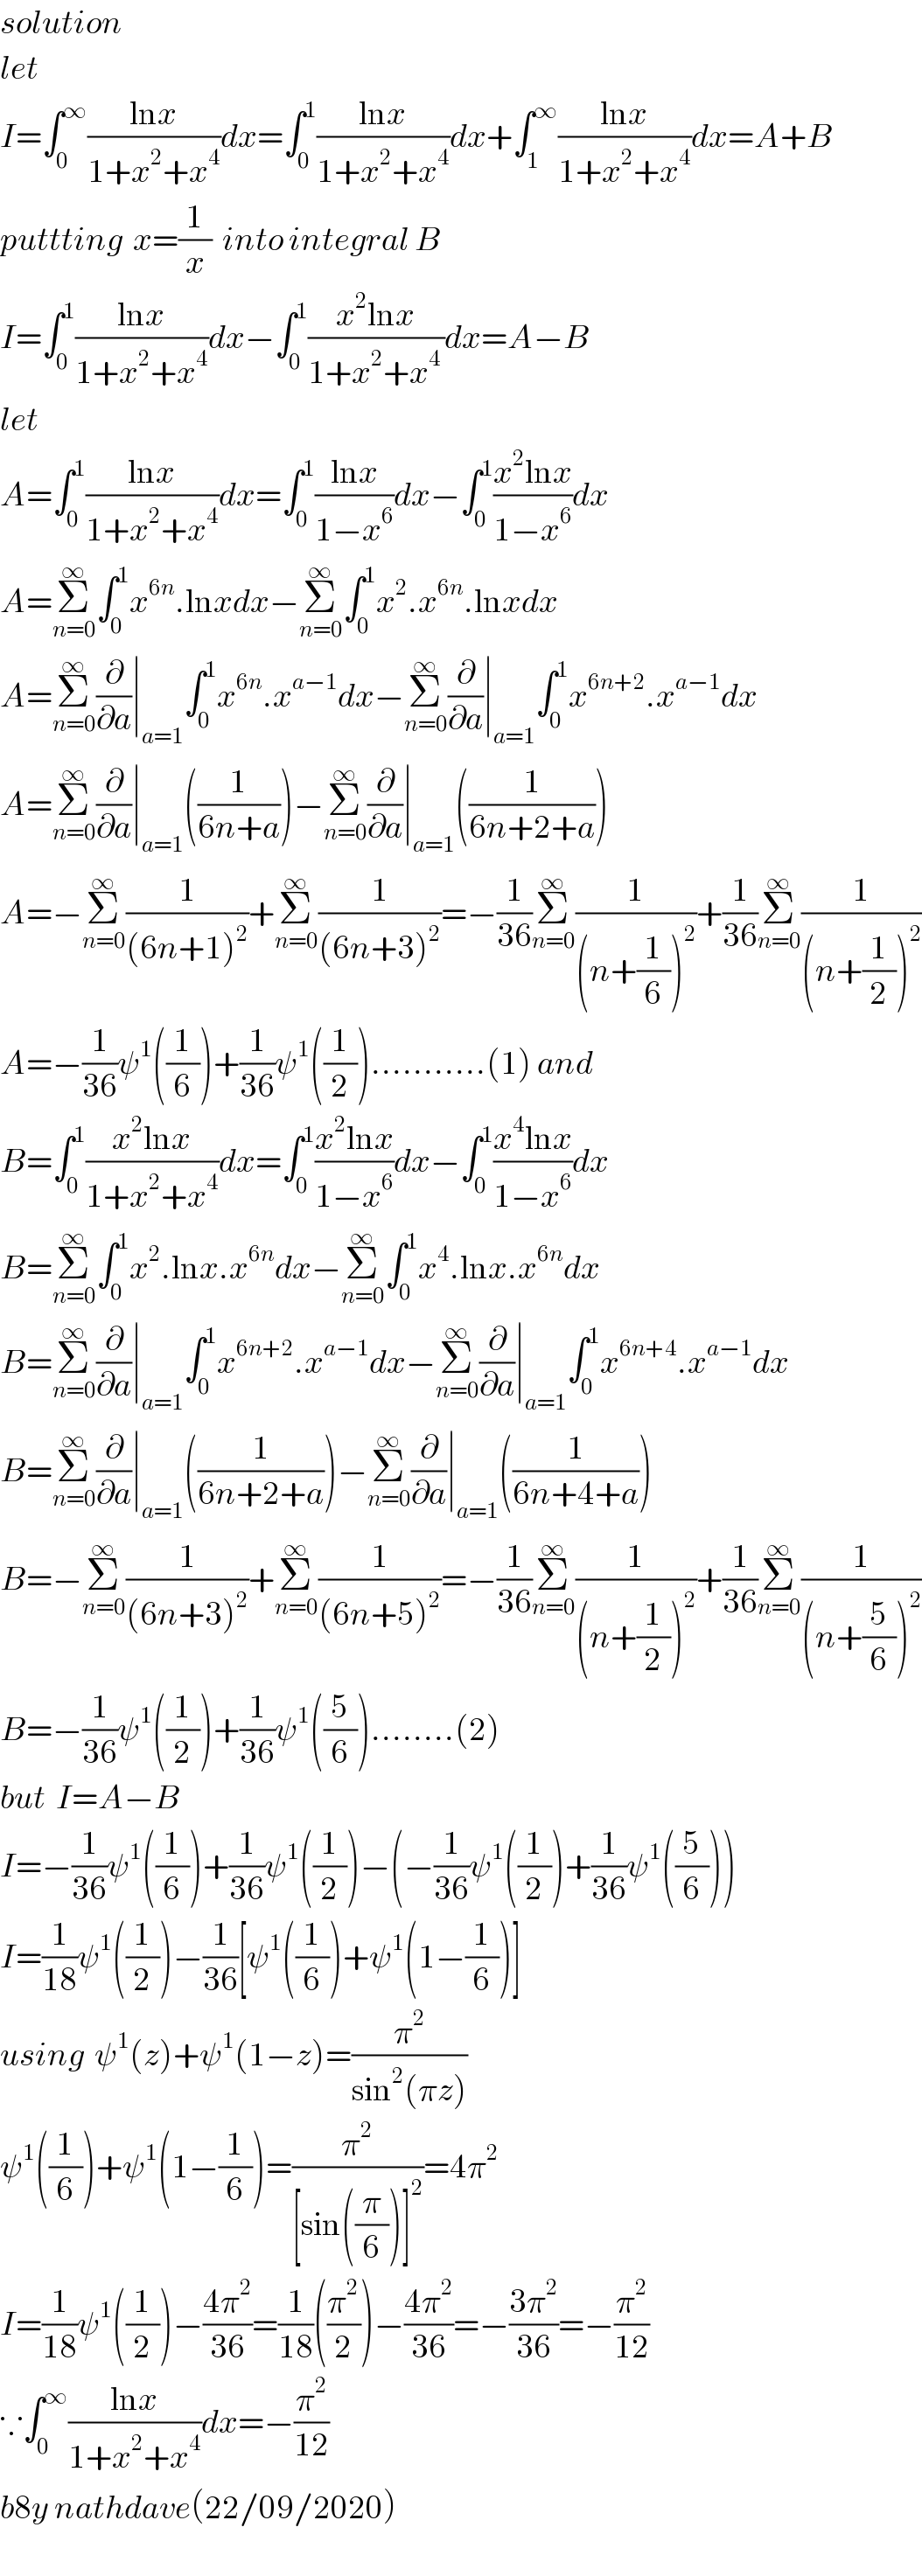 solution  let  I=∫_0 ^∞ ((lnx)/(1+x^2 +x^4 ))dx=∫_0 ^1 ((lnx)/(1+x^2 +x^4 ))dx+∫_1 ^∞ ((lnx)/(1+x^2 +x^4 ))dx=A+B  puttting  x=(1/x)  into integral B  I=∫_0 ^1 ((lnx)/(1+x^2 +x^4 ))dx−∫_0 ^1 ((x^2 lnx)/(1+x^2 +x^(4 ) ))dx=A−B  let  A=∫_0 ^1 ((lnx)/(1+x^2 +x^4 ))dx=∫_0 ^1 ((lnx)/(1−x^6 ))dx−∫_0 ^1 ((x^2 lnx)/(1−x^6 ))dx  A=Σ_(n=0) ^∞ ∫_0 ^1 x^(6n) .lnxdx−Σ_(n=0) ^∞ ∫_0 ^1 x^2 .x^(6n) .lnxdx  A=Σ_(n=0) ^∞ (∂/∂a)∣_(a=1) ∫_0 ^1 x^(6n) .x^(a−1) dx−Σ_(n=0) ^∞ (∂/∂a)∣_(a=1) ∫_0 ^1 x^(6n+2) .x^(a−1) dx  A=Σ_(n=0) ^∞ (∂/∂a)∣_(a=1) ((1/(6n+a)))−Σ_(n=0) ^∞ (∂/∂a)∣_(a=1) ((1/(6n+2+a)))  A=−Σ_(n=0) ^∞ (1/((6n+1)^2 ))+Σ_(n=0) ^∞ (1/((6n+3)^2 ))=−(1/(36))Σ_(n=0) ^∞ (1/((n+(1/6))^2 ))+(1/(36))Σ_(n=0) ^∞ (1/((n+(1/2))^2 ))  A=−(1/(36))ψ^1 ((1/6))+(1/(36))ψ^1 ((1/2))...........(1) and   B=∫_0 ^1 ((x^2 lnx)/(1+x^2 +x^4 ))dx=∫_0 ^1 ((x^2 lnx)/(1−x^6 ))dx−∫_0 ^1 ((x^4 lnx)/(1−x^6 ))dx  B=Σ_(n=0) ^∞ ∫_0 ^1 x^2 .lnx.x^(6n) dx−Σ_(n=0) ^∞ ∫_0 ^1 x^4 .lnx.x^(6n) dx  B=Σ_(n=0) ^∞ (∂/∂a)∣_(a=1) ∫_0 ^1 x^(6n+2) .x^(a−1) dx−Σ_(n=0) ^∞ (∂/∂a)∣_(a=1) ∫_0 ^1 x^(6n+4) .x^(a−1) dx  B=Σ_(n=0) ^∞ (∂/∂a)∣_(a=1) ((1/(6n+2+a)))−Σ_(n=0) ^∞ (∂/∂a)∣_(a=1) ((1/(6n+4+a)))  B=−Σ_(n=0) ^∞ (1/((6n+3)^2 ))+Σ_(n=0) ^∞ (1/((6n+5)^2 ))=−(1/(36))Σ_(n=0) ^∞ (1/((n+(1/2))^2 ))+(1/(36))Σ_(n=0) ^∞ (1/((n+(5/6))^2 ))  B=−(1/(36))ψ^1 ((1/2))+(1/(36))ψ^1 ((5/6))........(2)  but  I=A−B  I=−(1/(36))ψ^1 ((1/6))+(1/(36))ψ^1 ((1/2))−(−(1/(36))ψ^1 ((1/2))+(1/(36))ψ^1 ((5/6)))  I=(1/(18))ψ^1 ((1/2))−(1/(36))[ψ^1 ((1/6))+ψ^1 (1−(1/6))]  using  ψ^1 (z)+ψ^1 (1−z)=(π^2 /(sin^2 (πz)))  ψ^1 ((1/6))+ψ^1 (1−(1/6))=(π^2 /([sin((π/6))]^2 ))=4π^2   I=(1/(18))ψ^1 ((1/2))−((4π^2 )/(36))=(1/(18))((π^2 /2))−((4π^2 )/(36))=−((3π^2 )/(36))=−(π^2 /(12))  ∵∫_0 ^∞ ((lnx)/(1+x^2 +x^4 ))dx=−(π^2 /(12))  b8y nathdave(22/09/2020)  